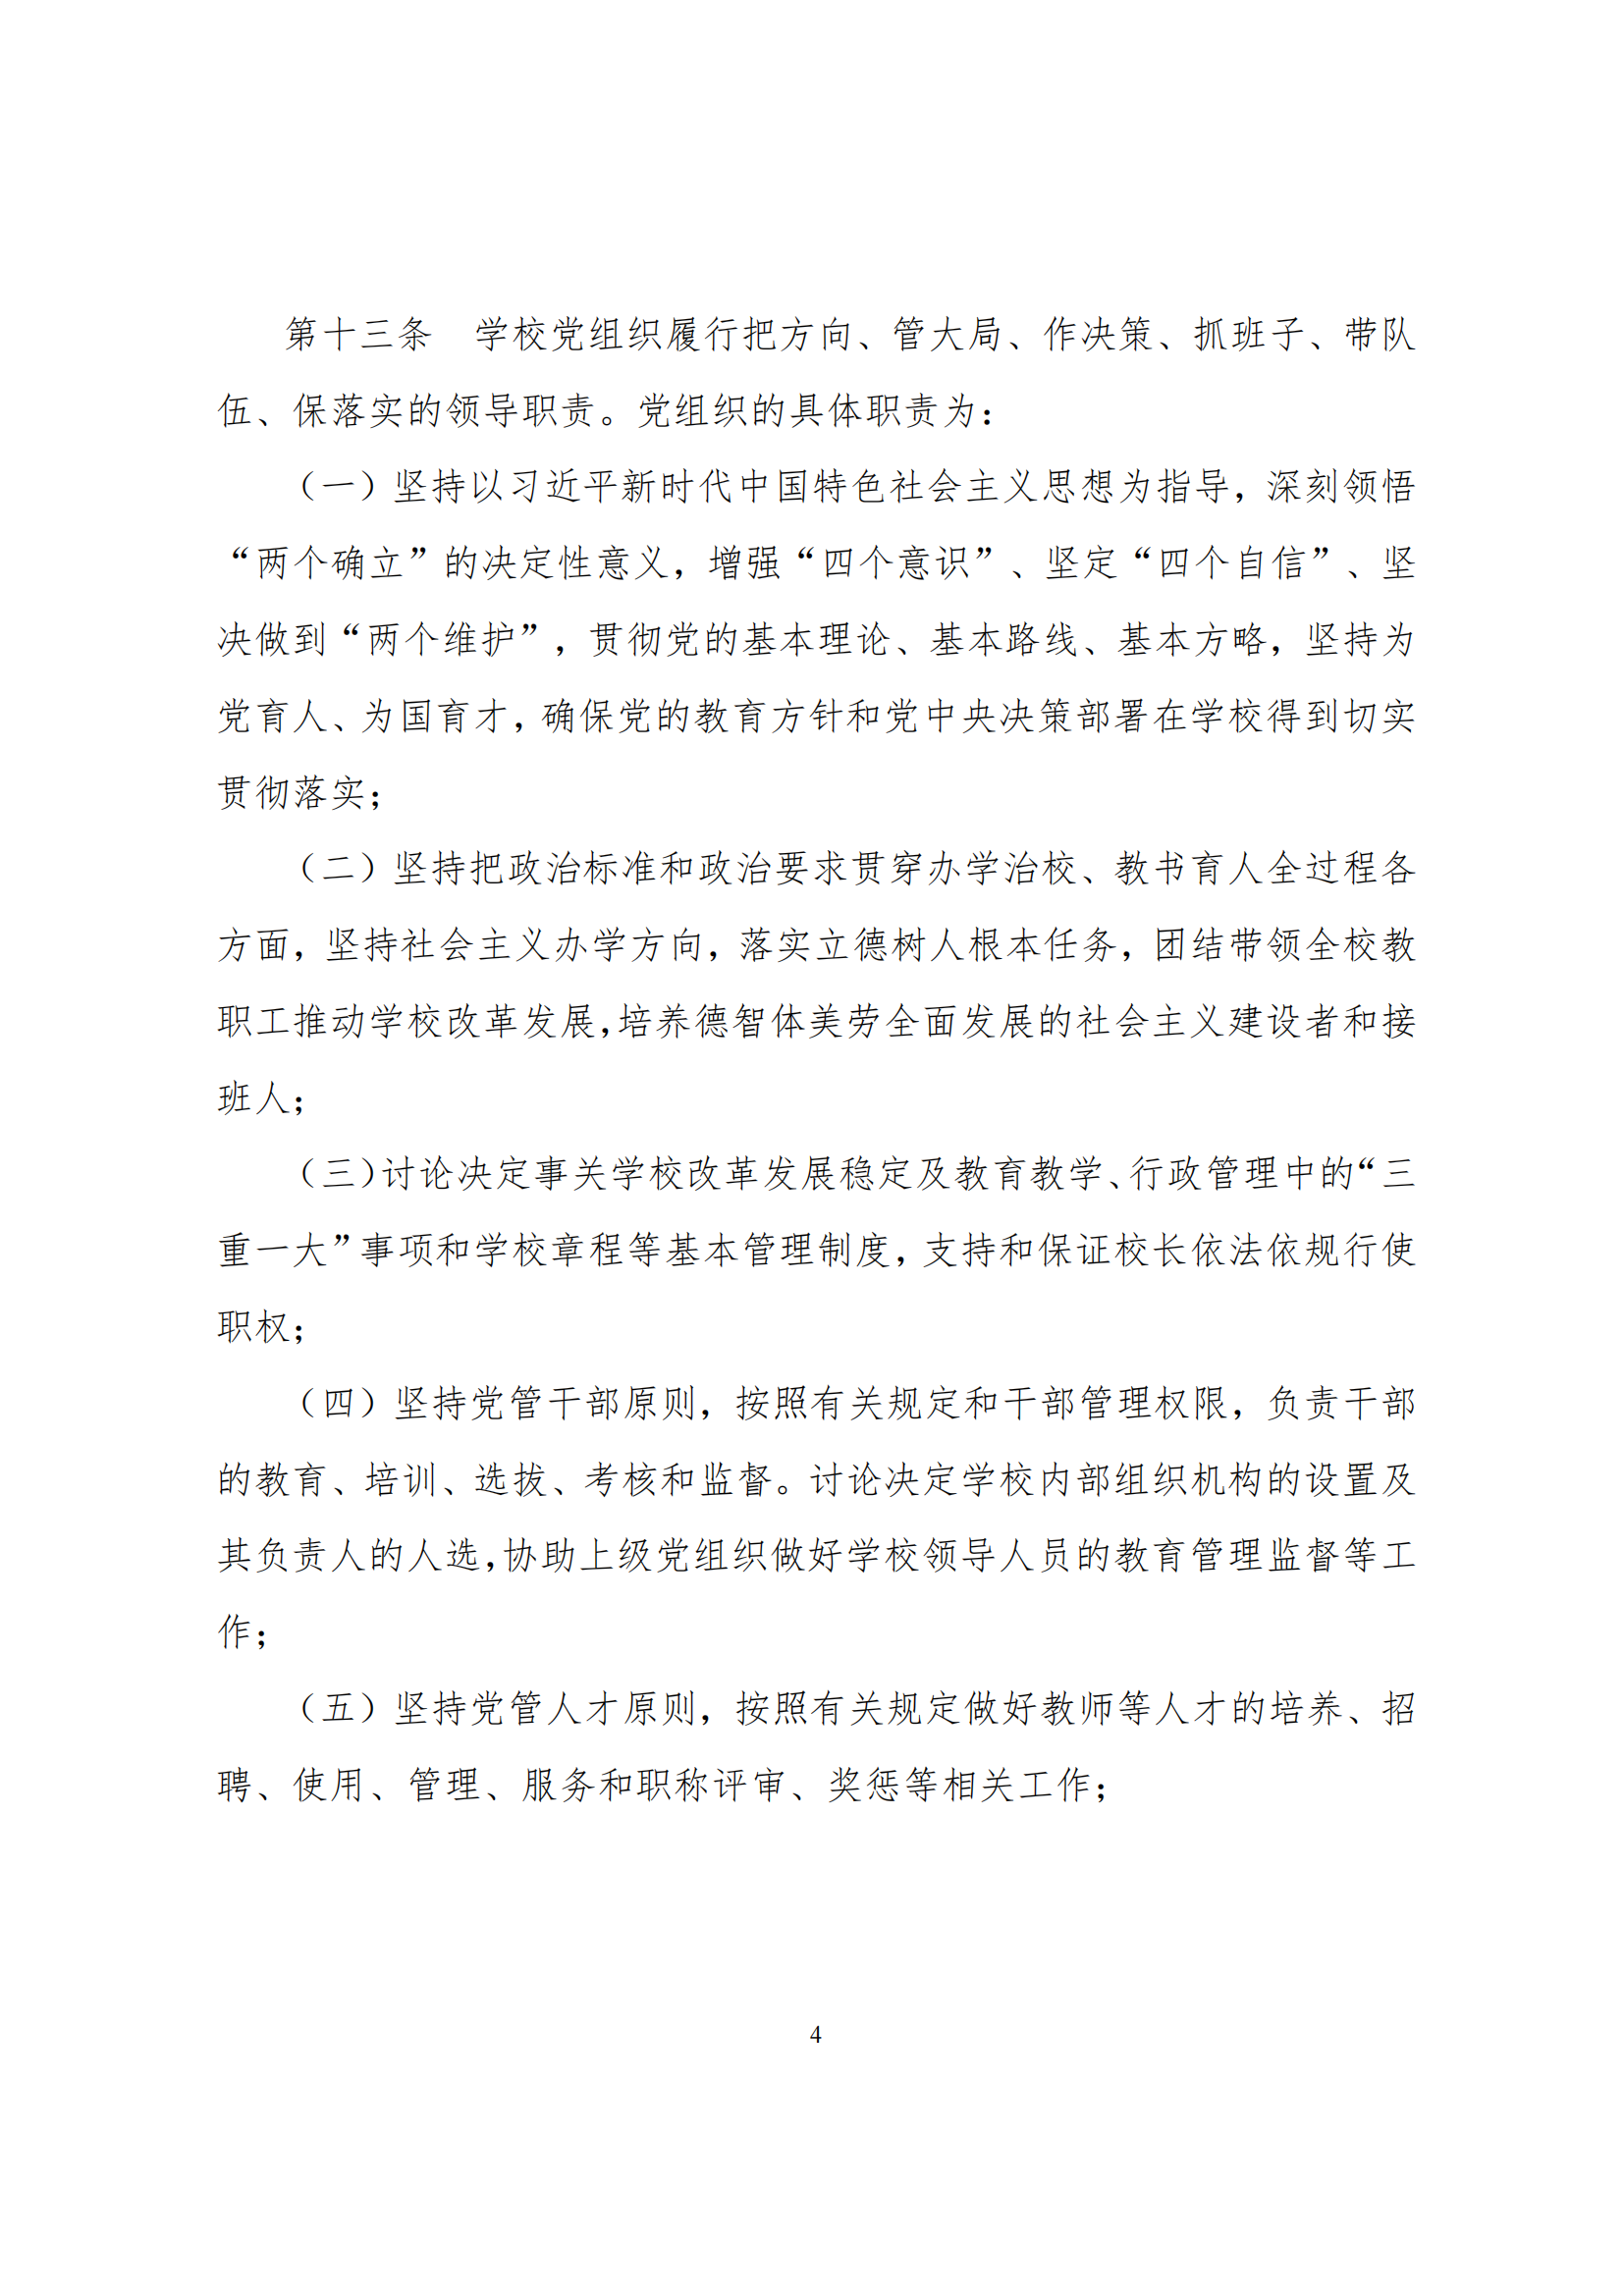 上海市徐汇区求知小学学校章程（提交稿）_03.png